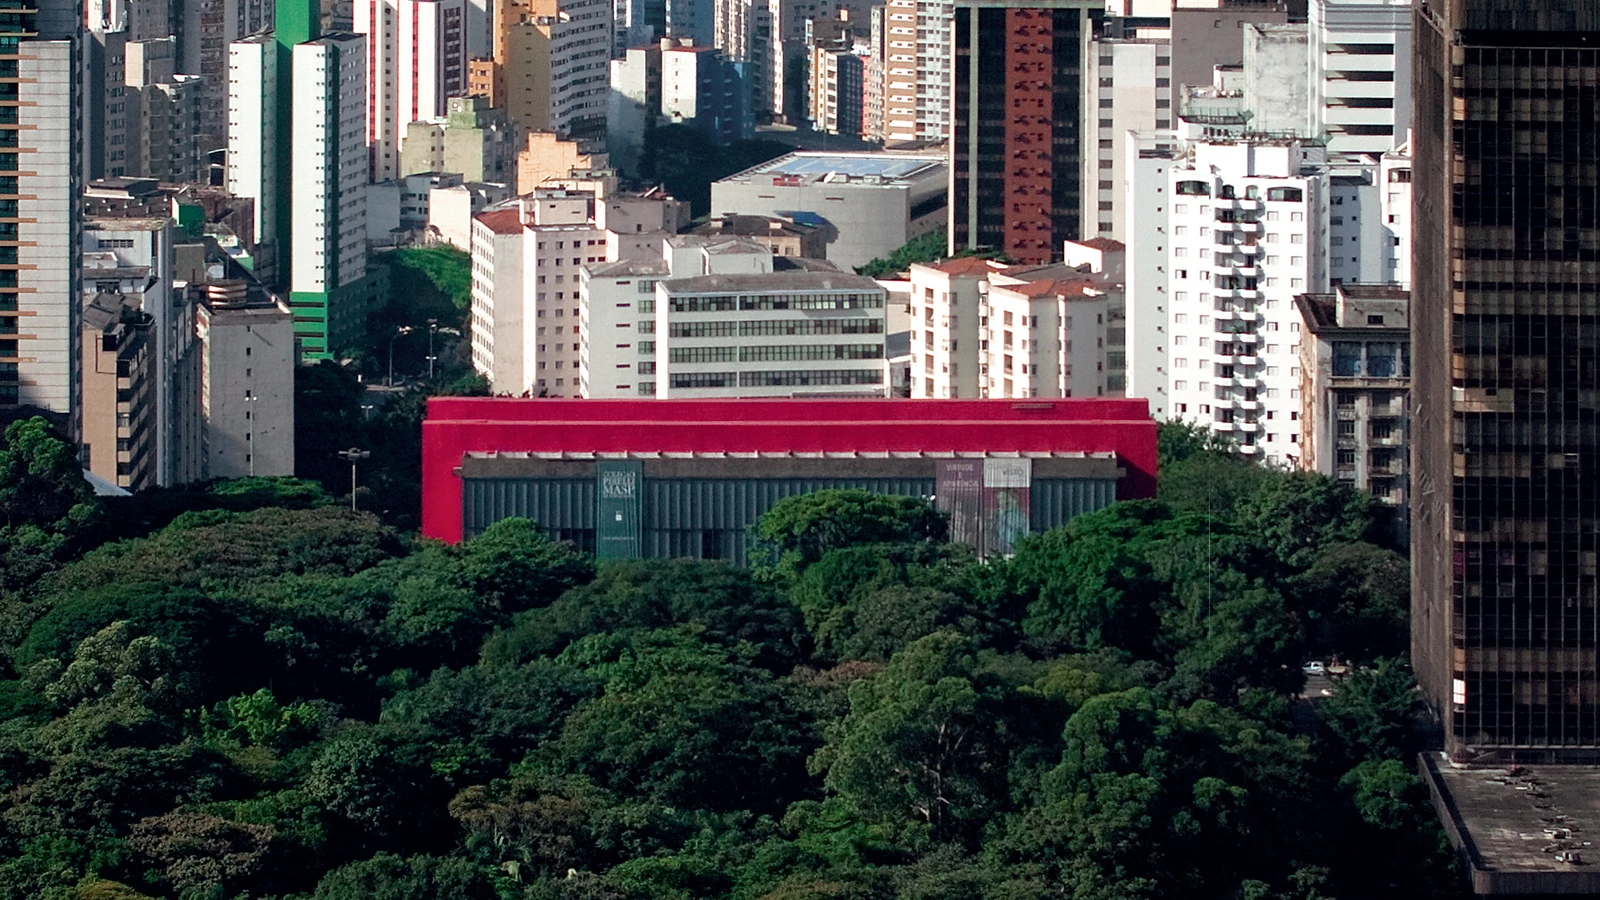 São Paulo Museum of Art - Wikipedia